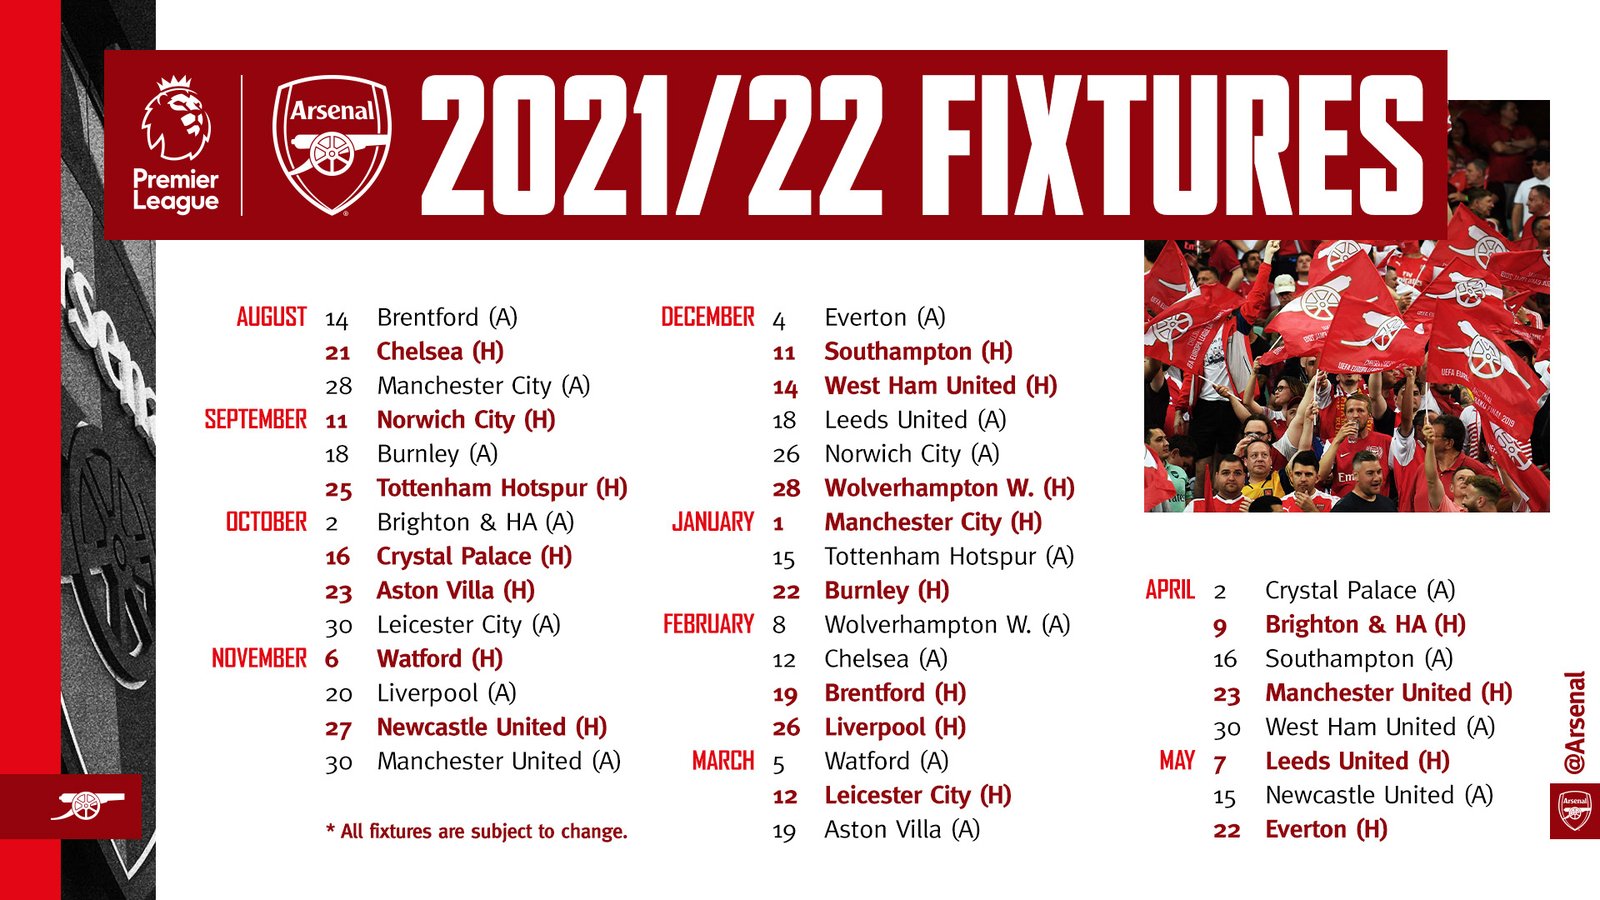 Arsenal’s 2021/22 Premier League fixtures released | Premier League